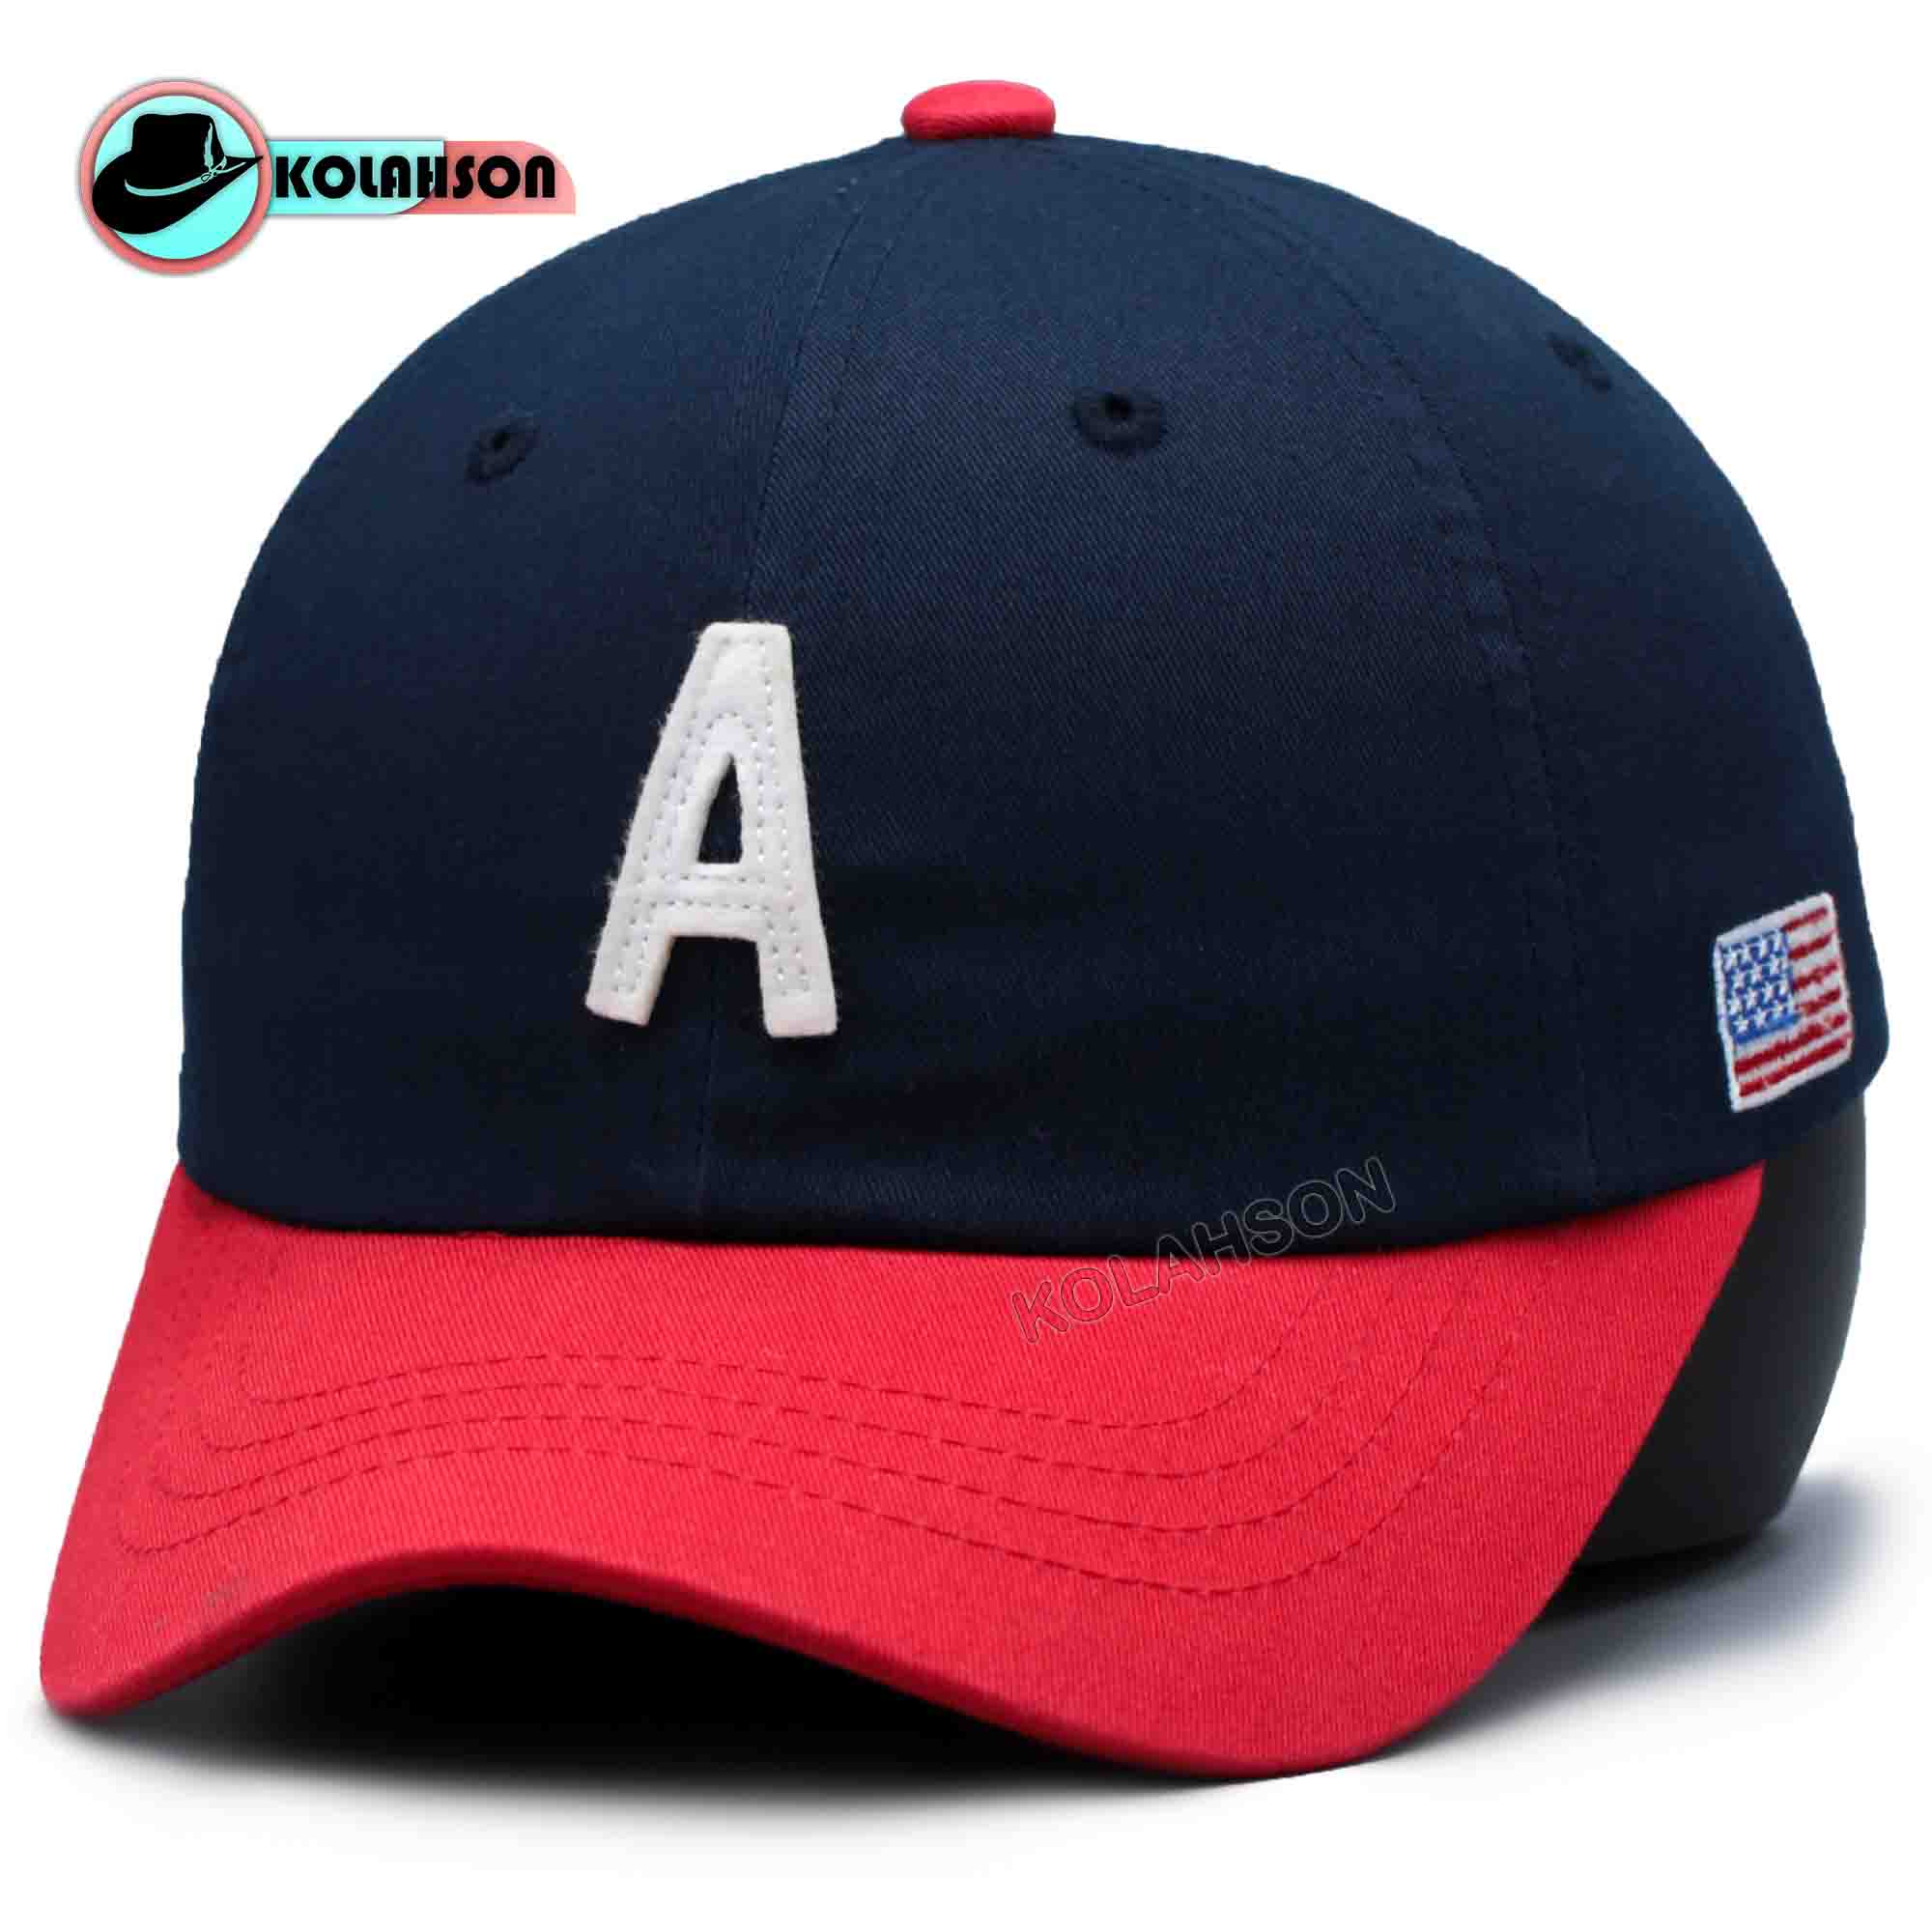 کلاه بچگانه ی اسپرت بیسبالی طرح A تک رنگ به رنگ سرمه ای با نقاب قرمز مناسب سایز 52 تا 55 کد KBEBTATRBRSBNGHMS52T55001